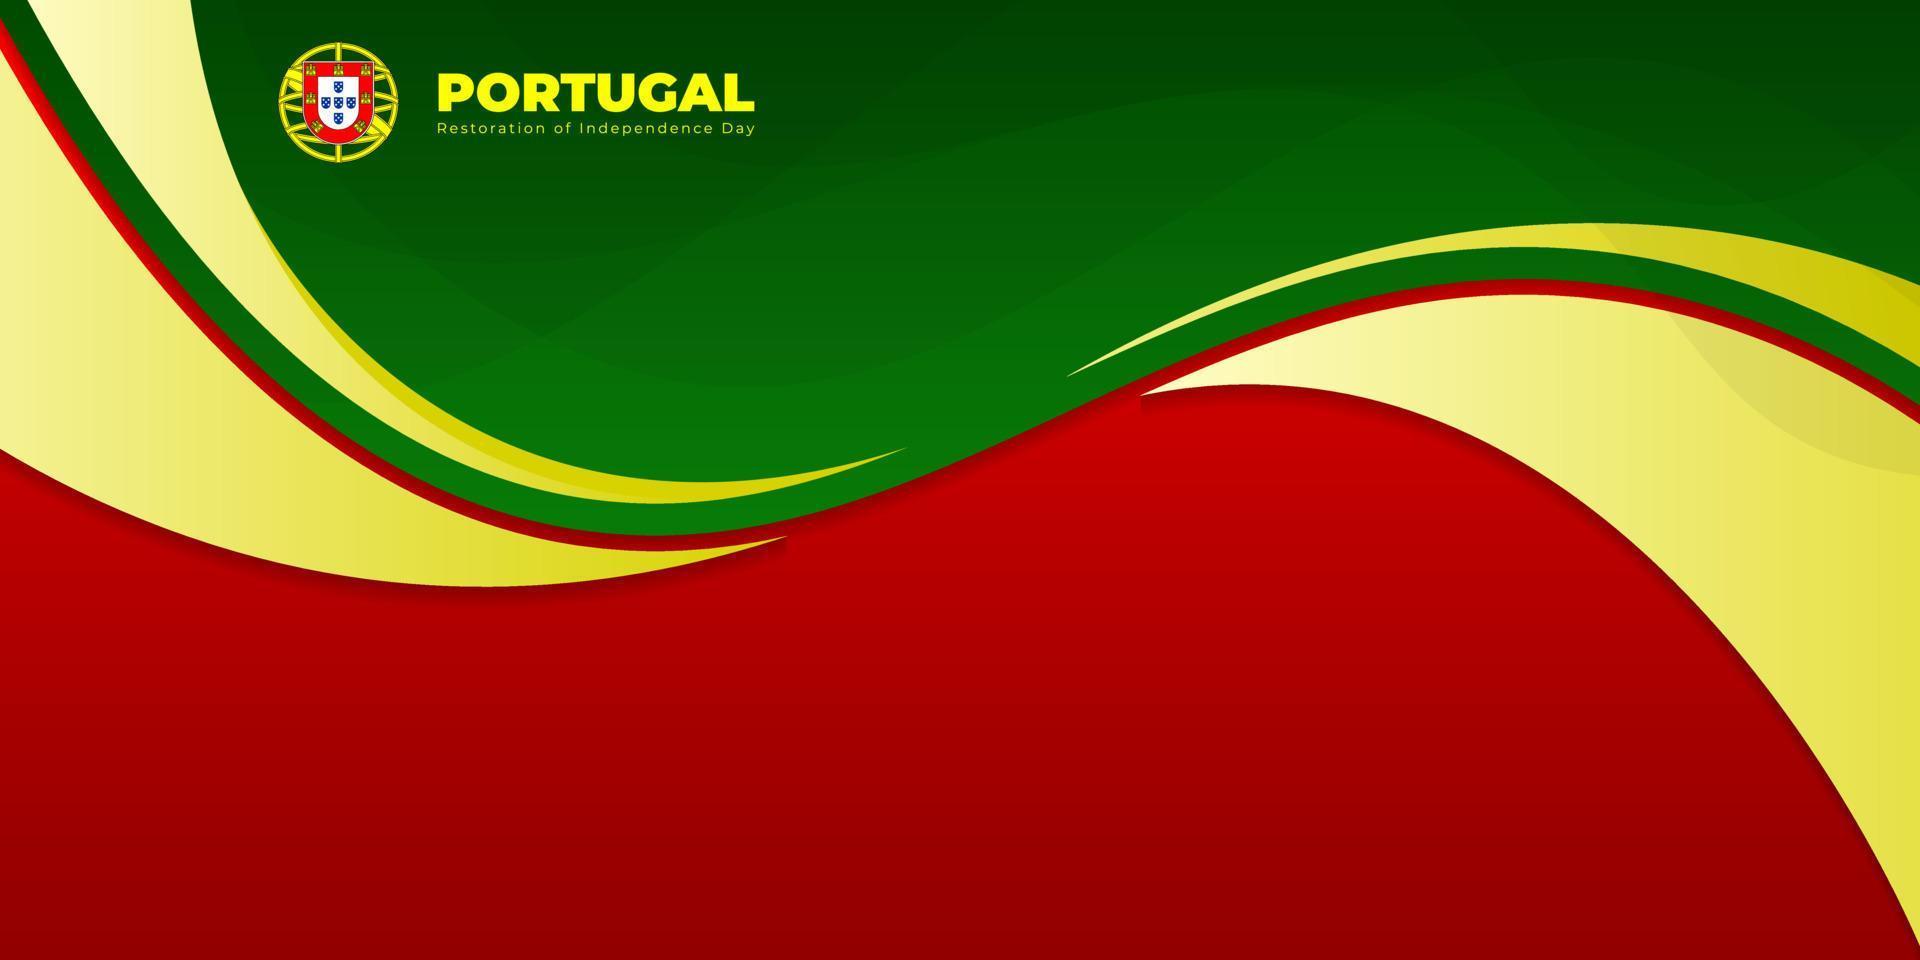 gewellter roter und grüner abstrakter Hintergrund. portugal restaurierung unabhängigkeitstag vorlagendesign. vektor